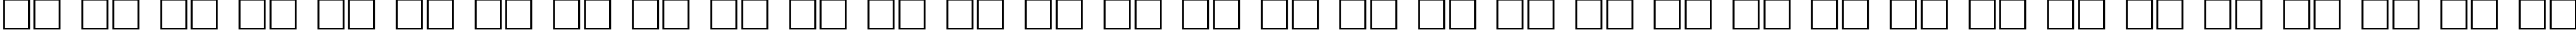 Пример написания русского алфавита шрифтом Glasten